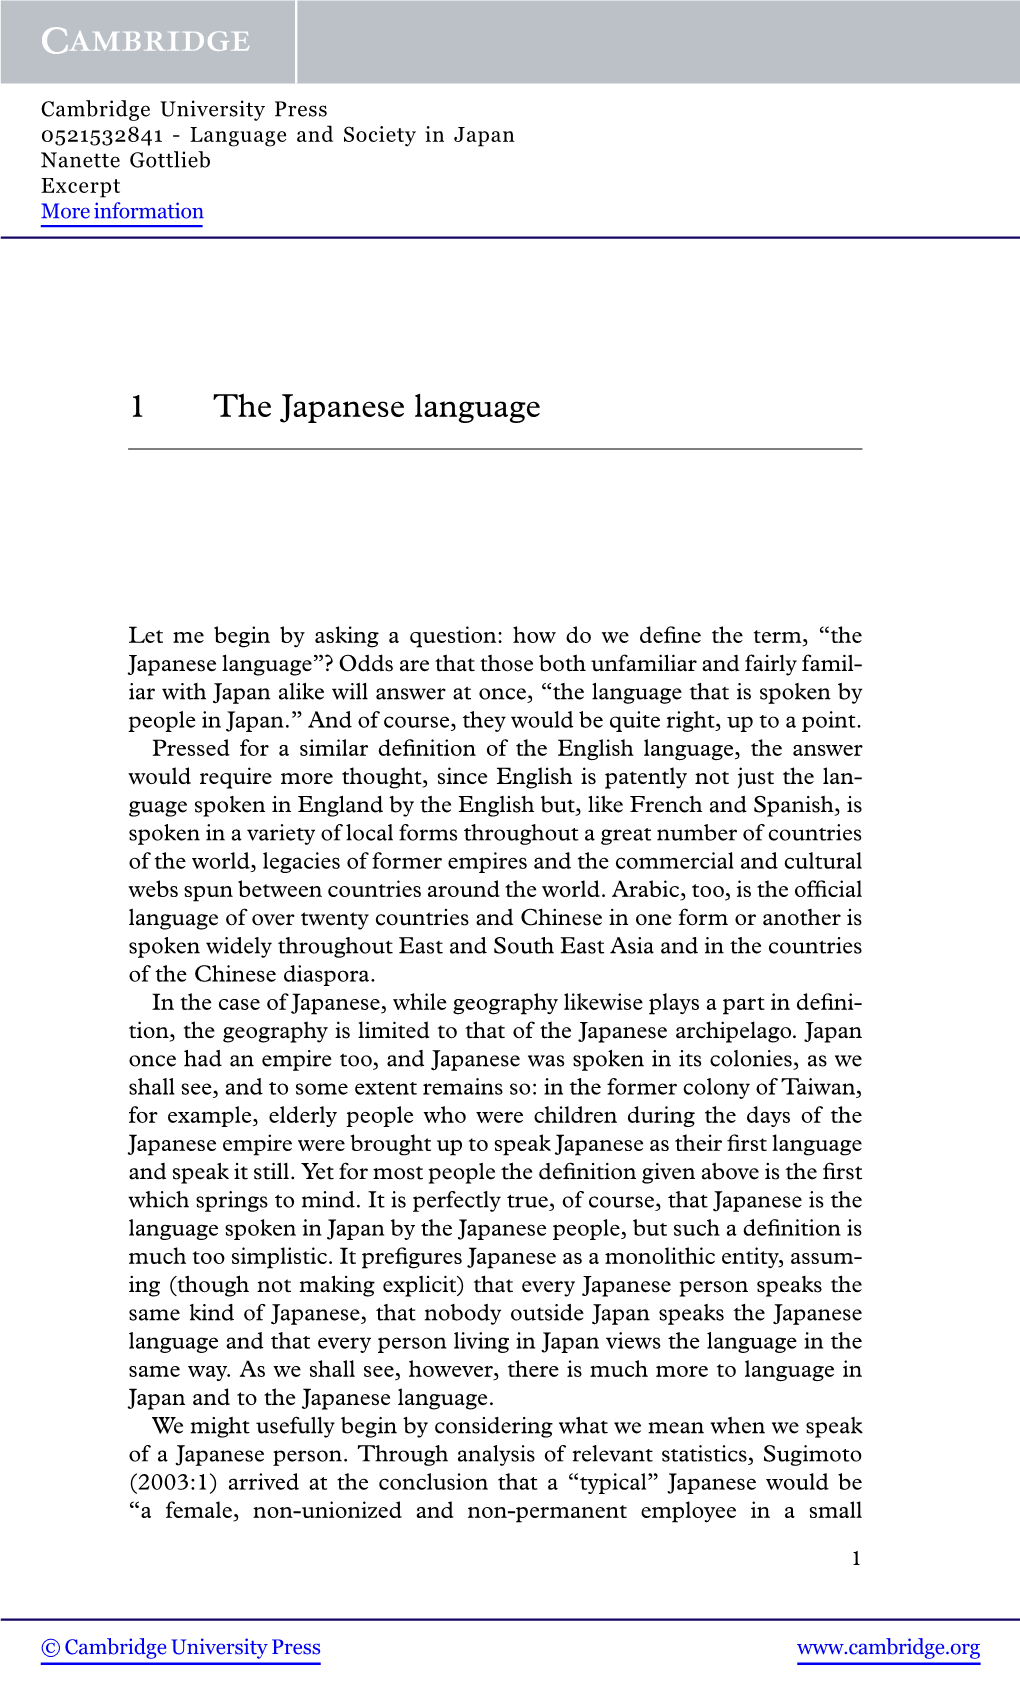 1 the Japanese Language